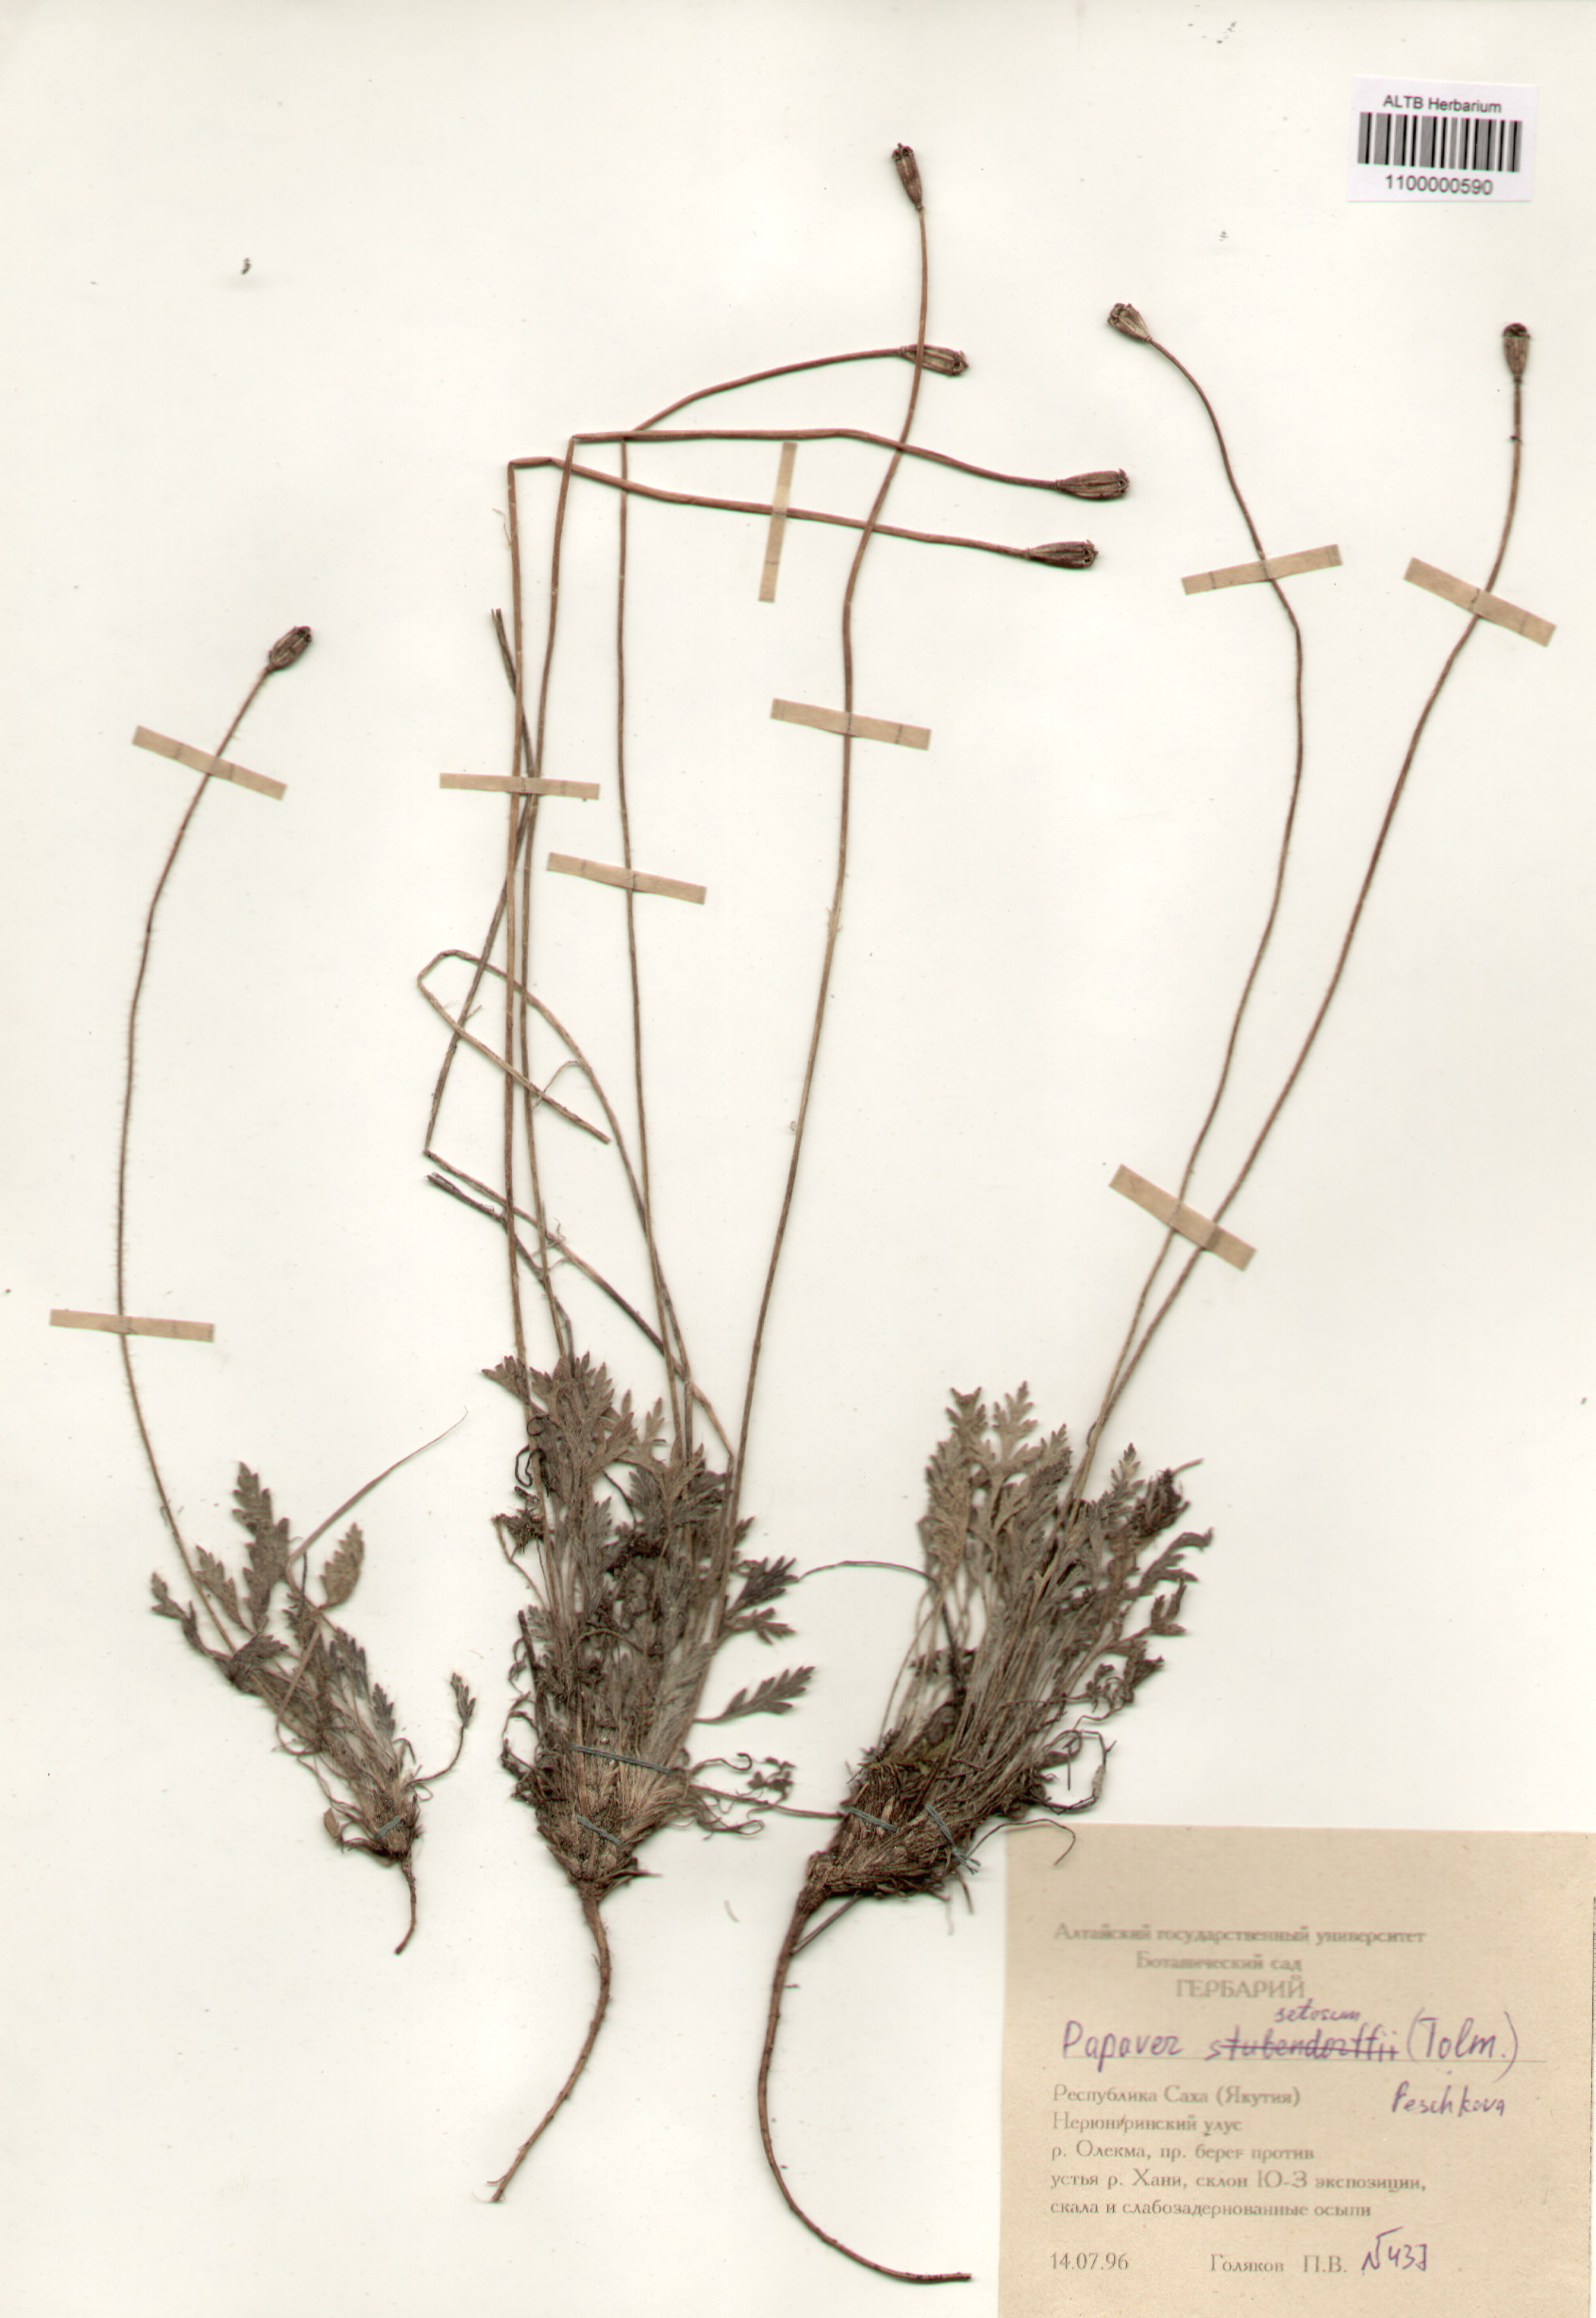 Papaveraceae,Papaver setosum (Tolm.) Peschkova